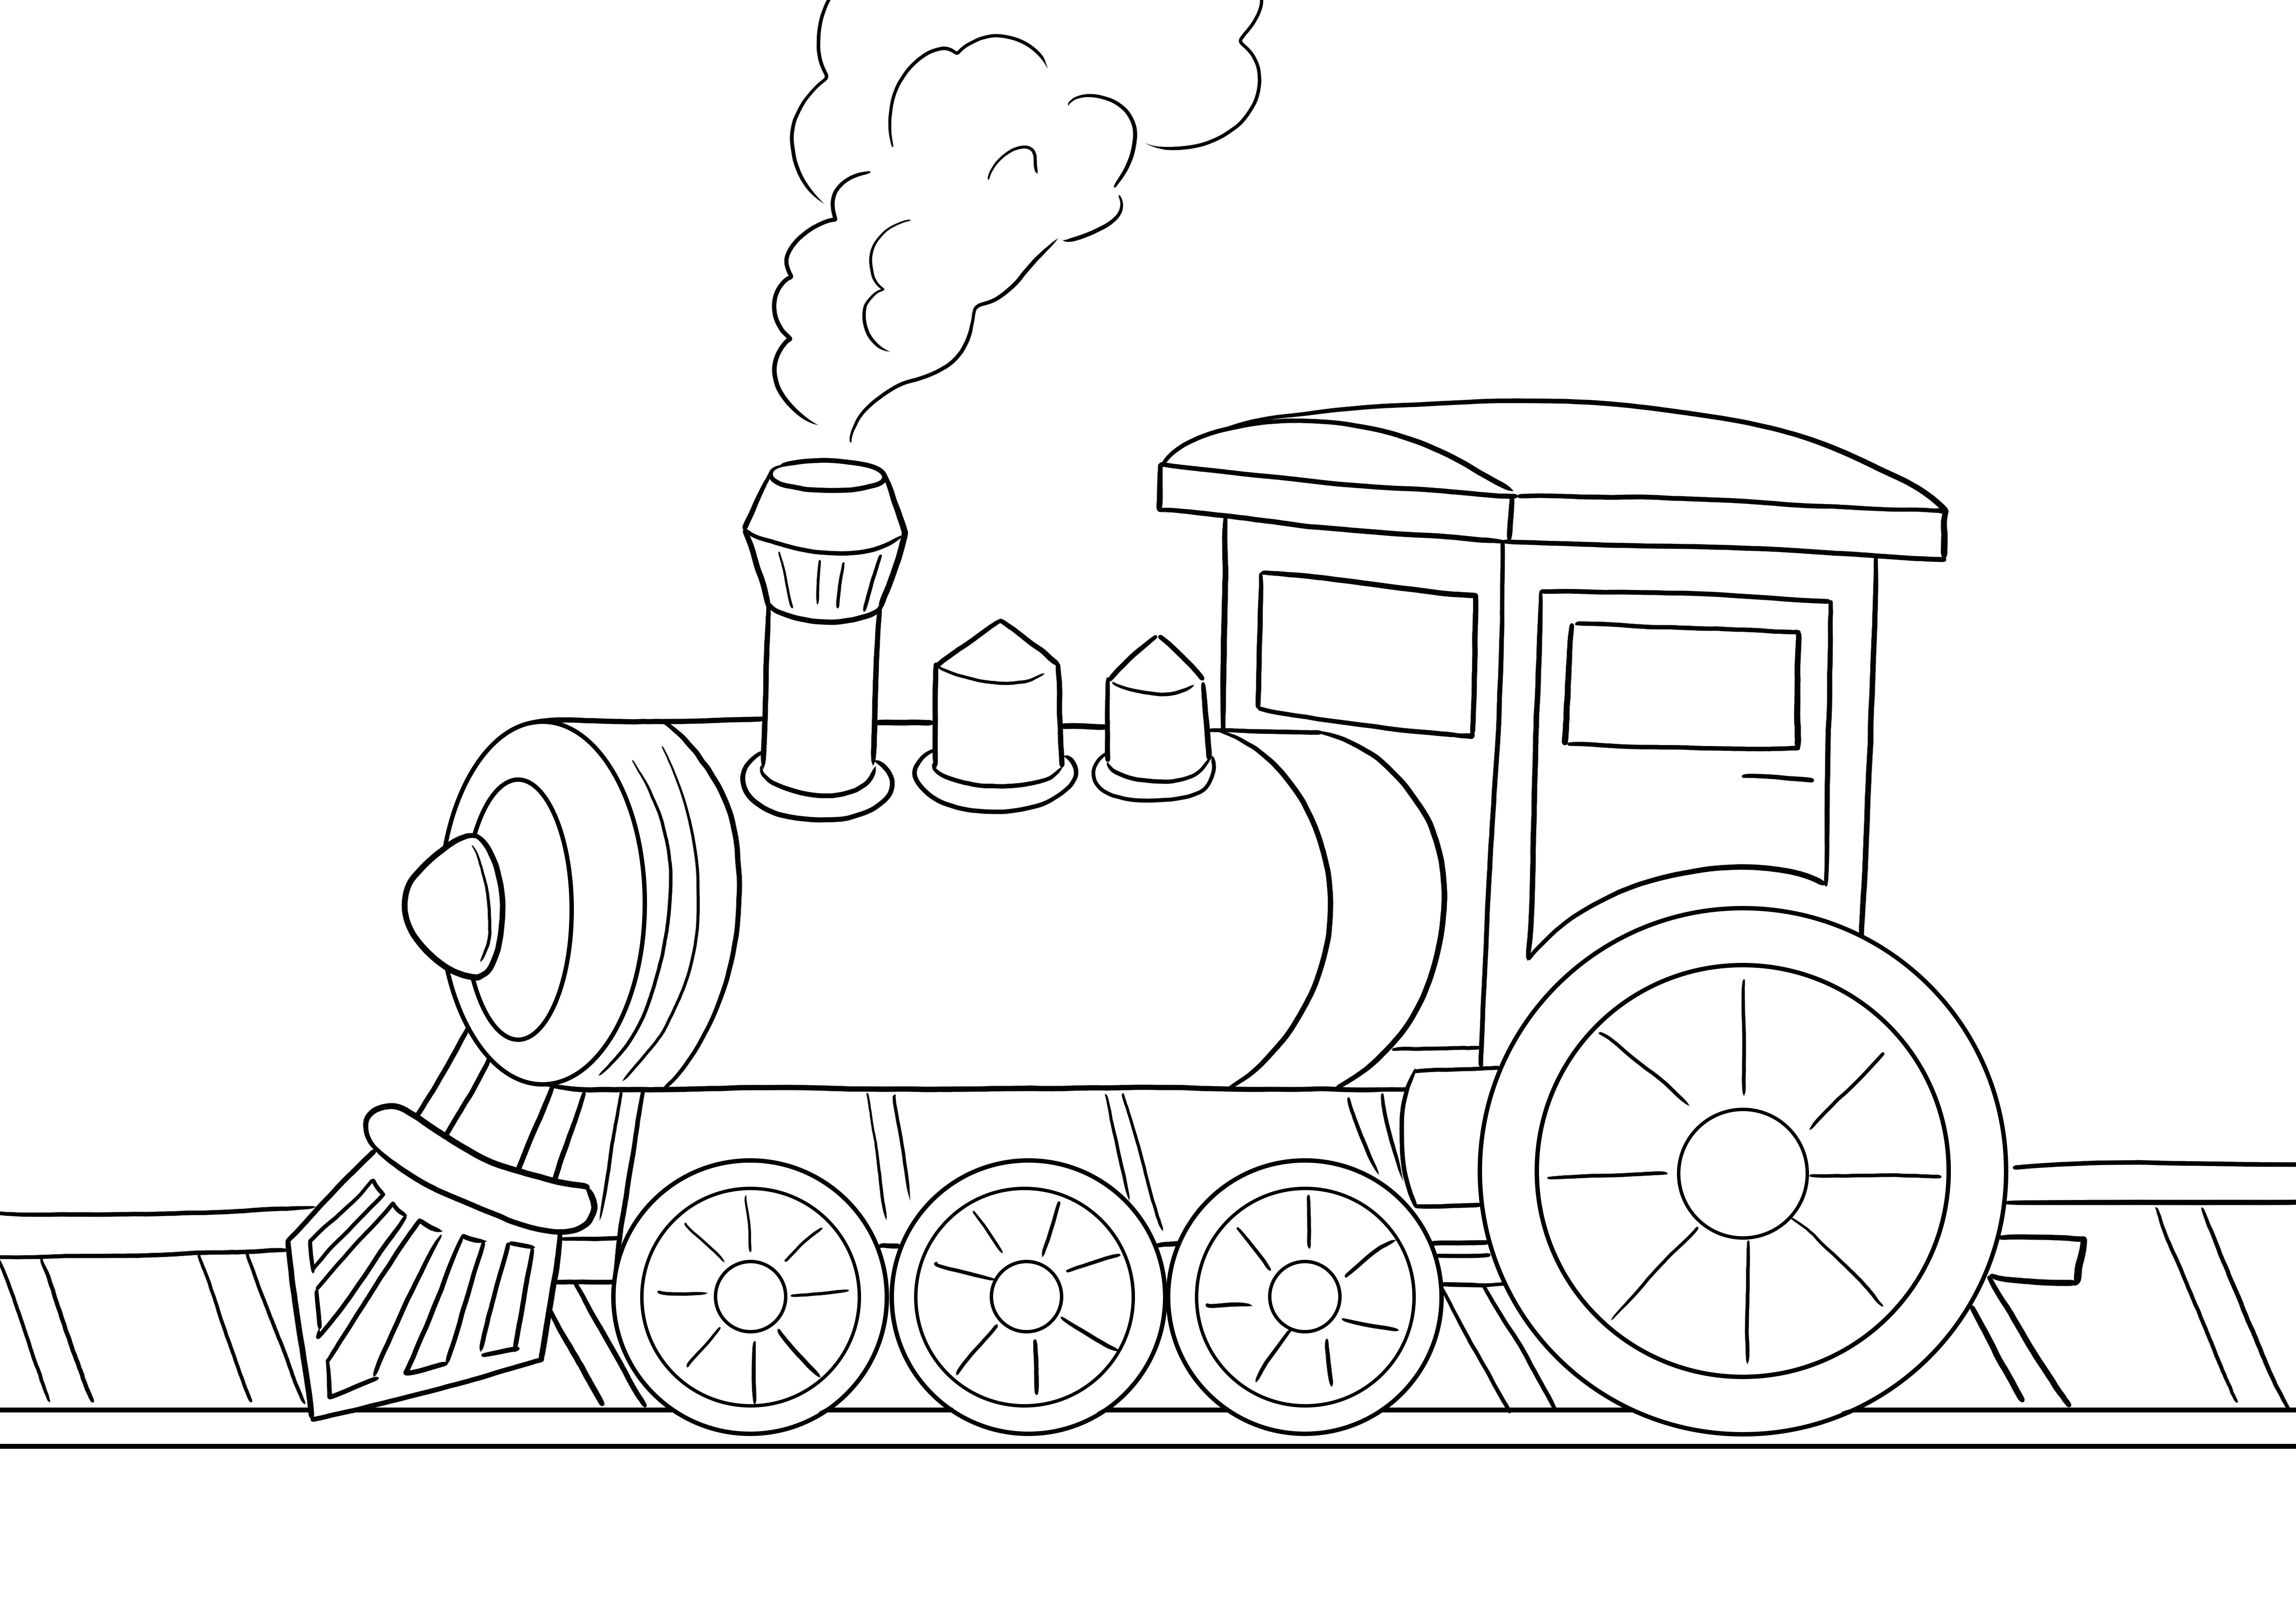 Locomotiva a vapore scaricabile gratuitamente e facile da colorare per imparare divertendosi